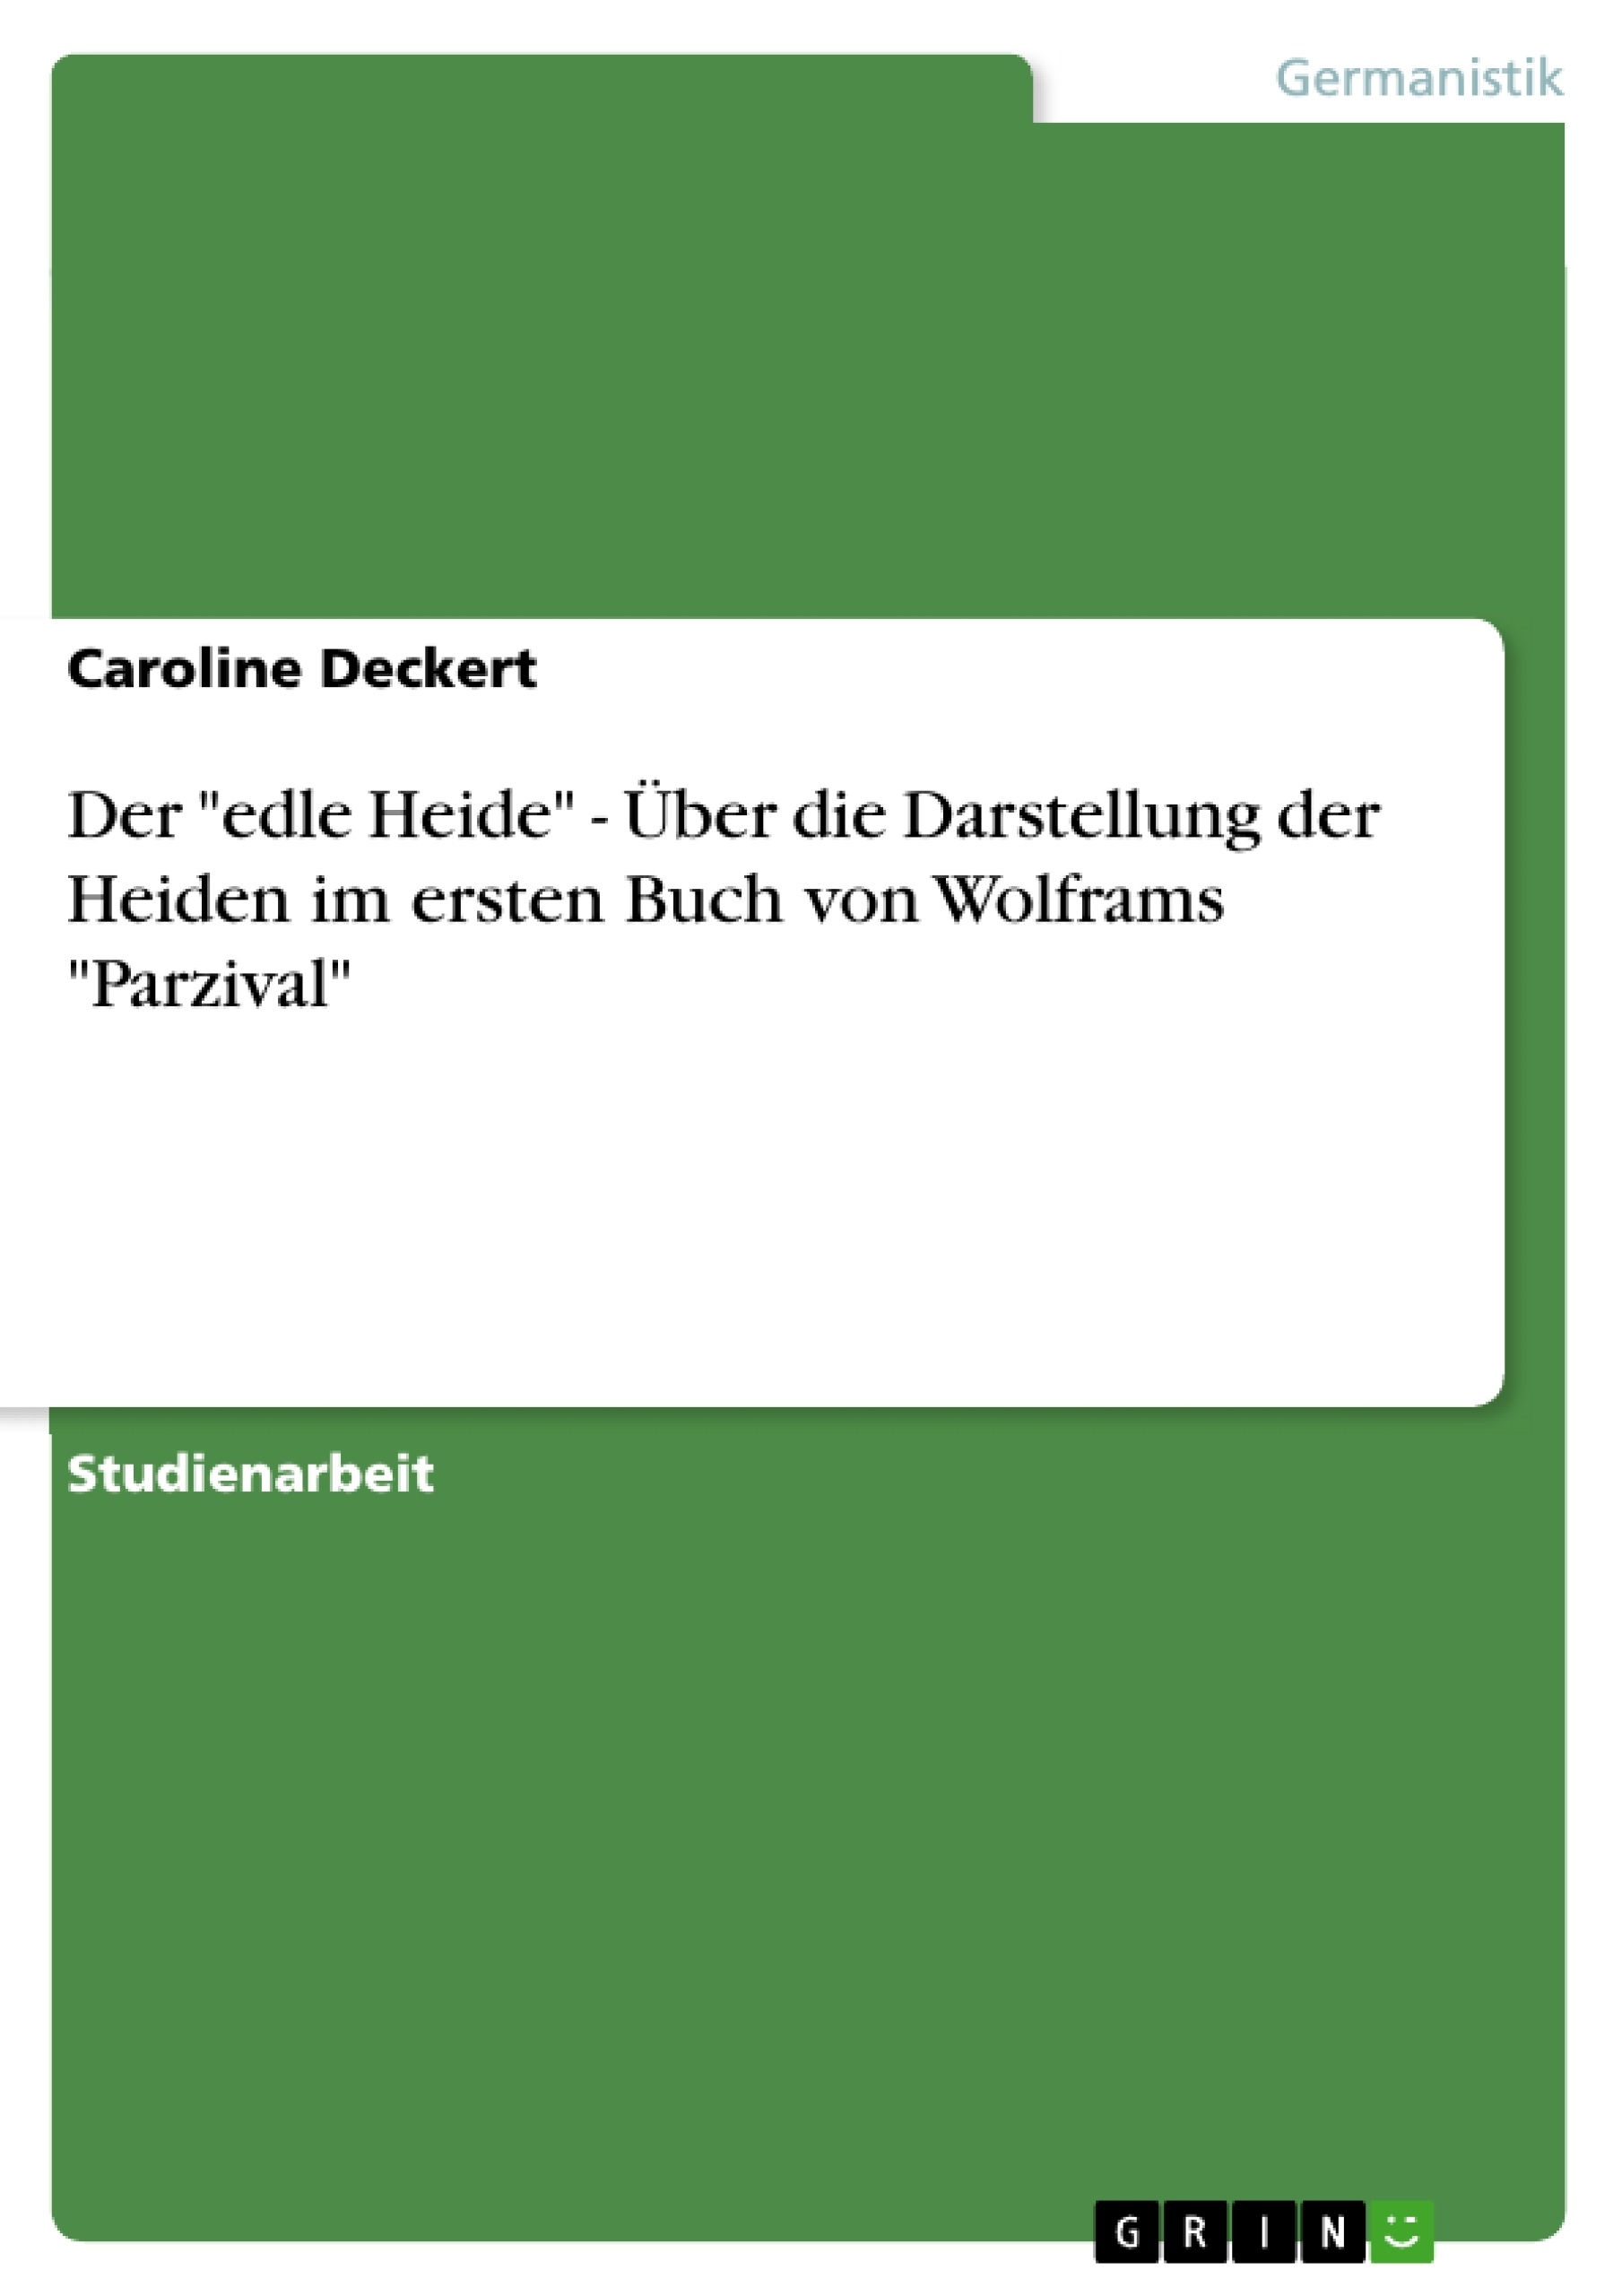 Title: Der "edle Heide" - Über die Darstellung der Heiden im ersten Buch von Wolframs "Parzival"